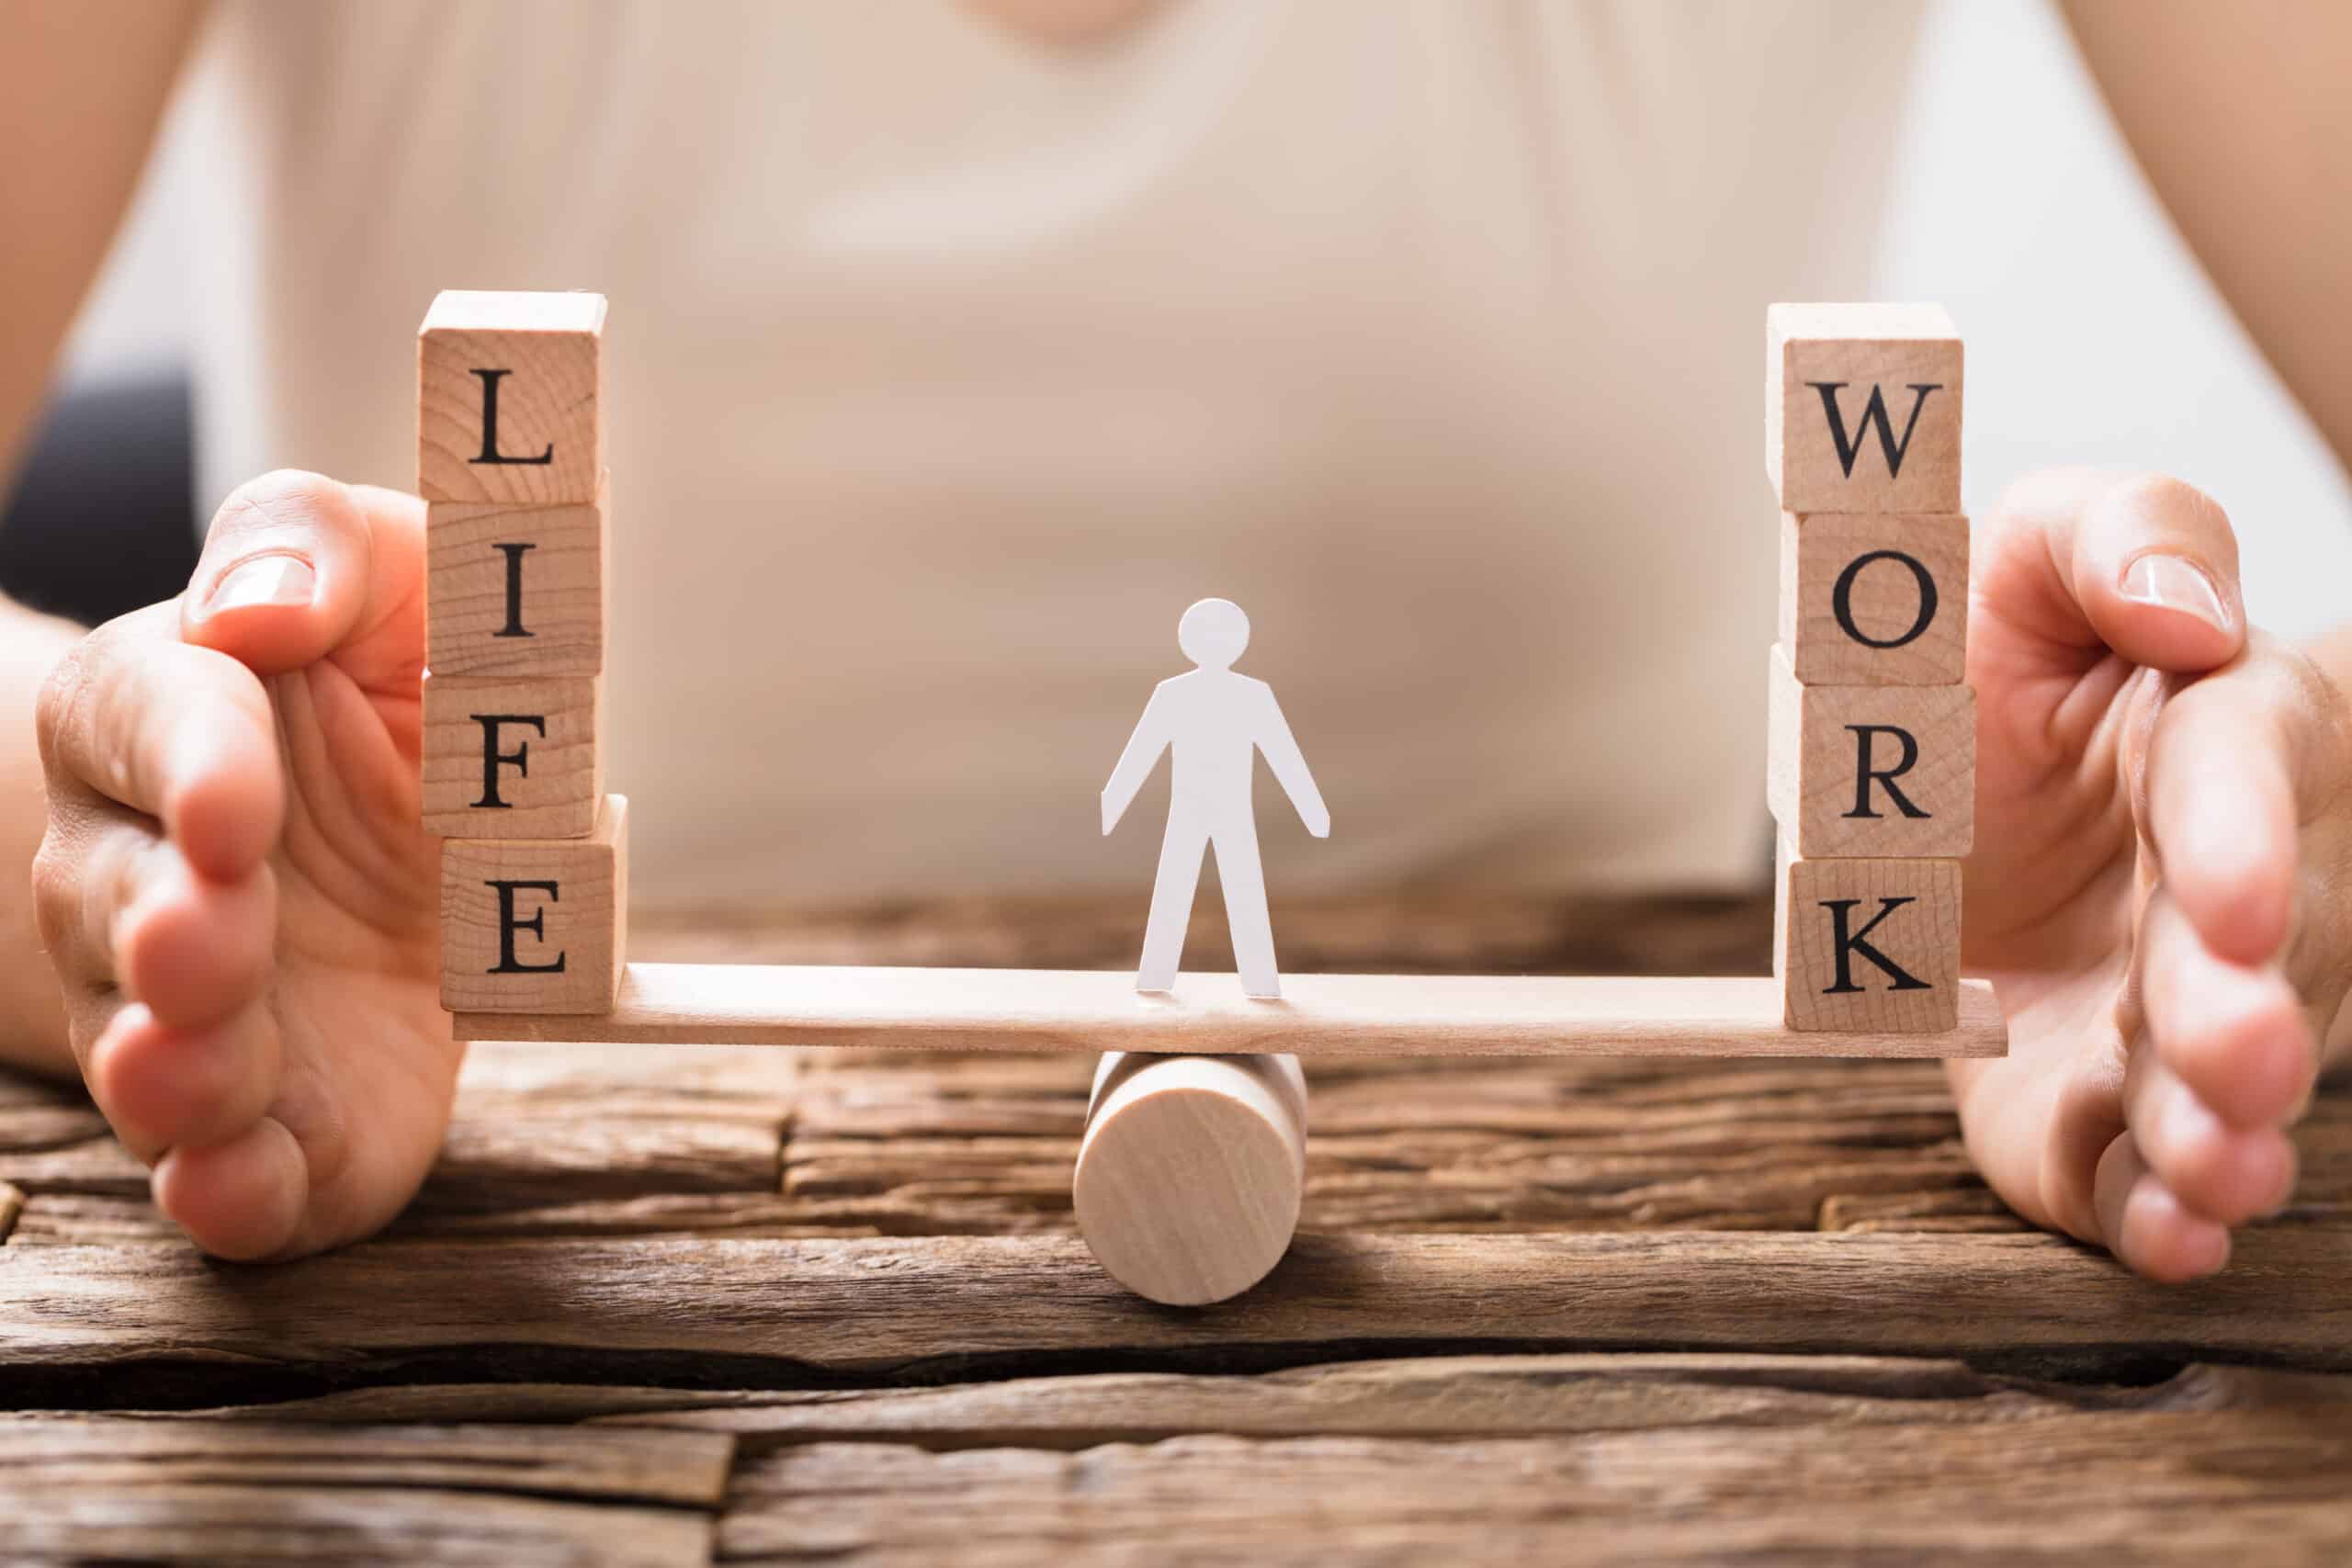 Für eine gute Work-Life-Balance ist ein Gleichgewicht zwischen beruflichen und privaten Tätigkeiten sinnvoll.